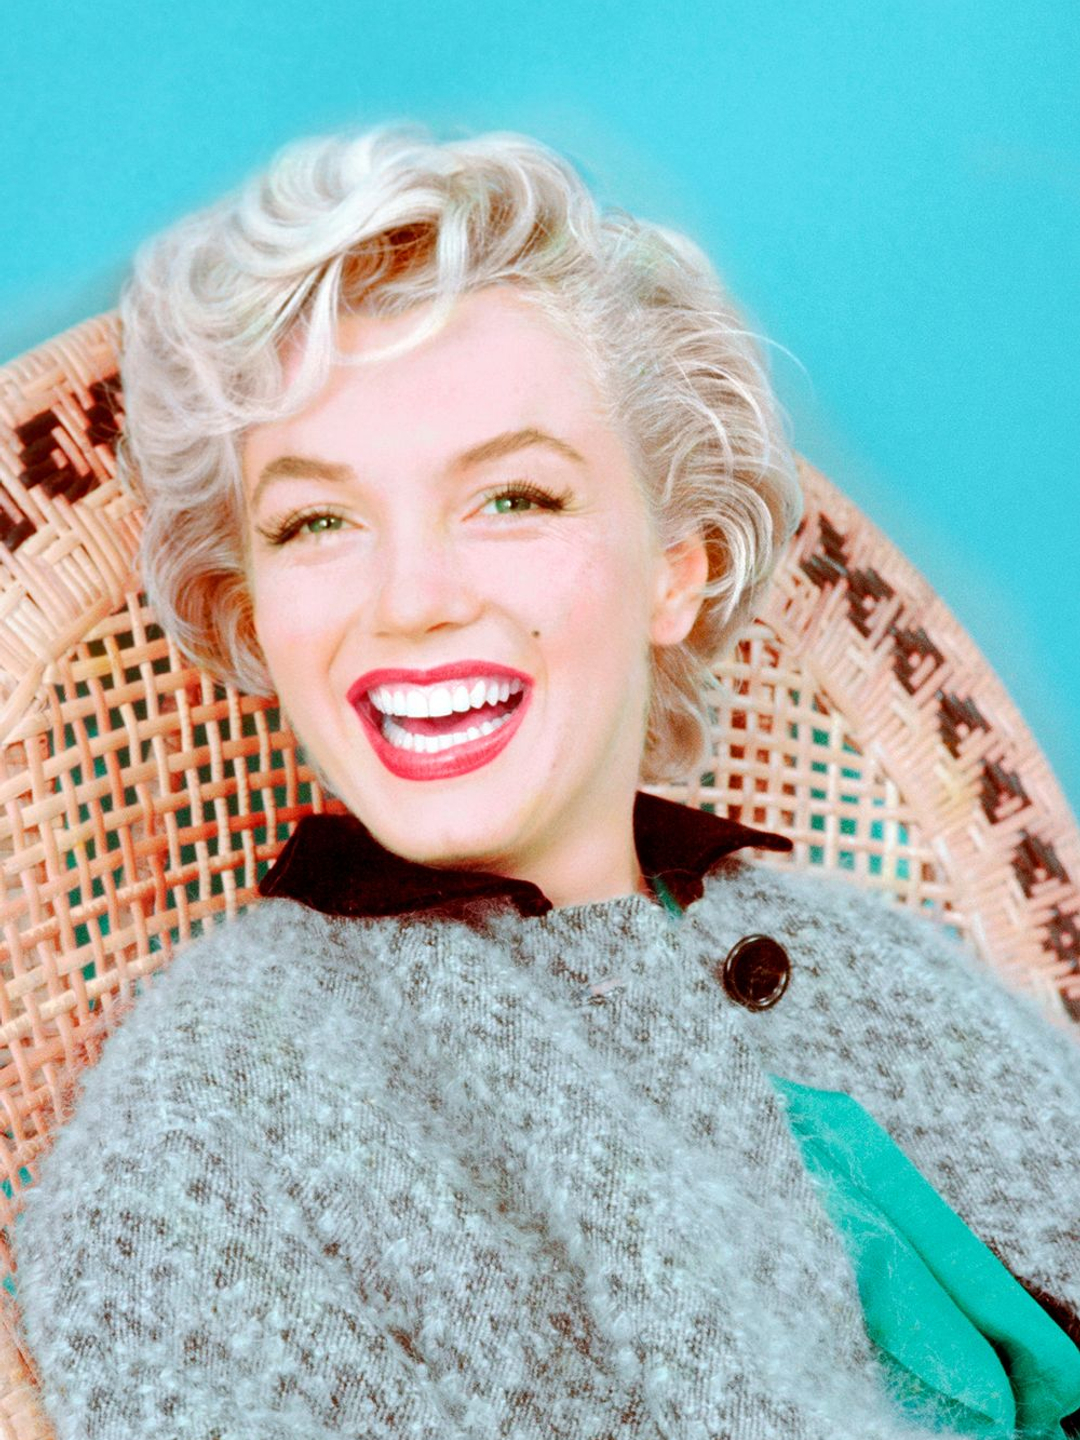 Marilyn Monroe when did she die